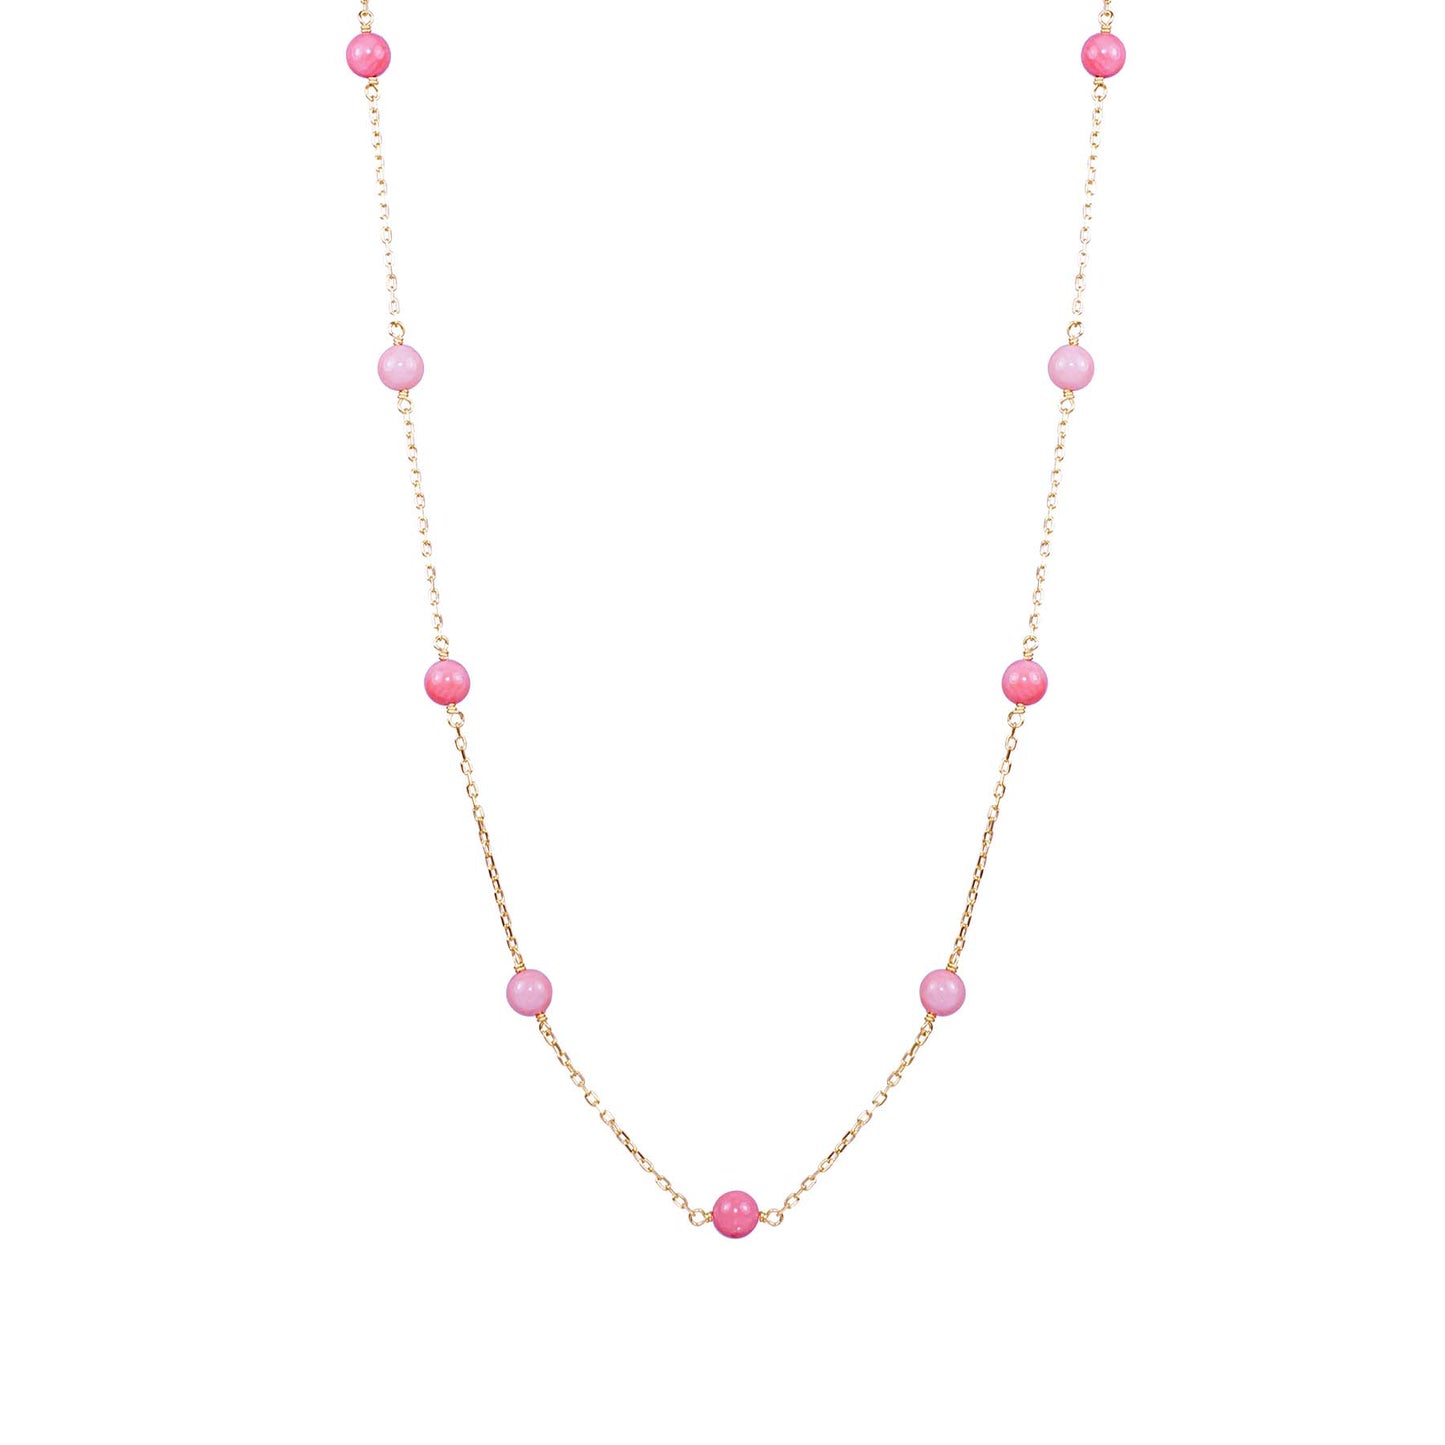 14k Pink Coral 9 Station Necklace 17"